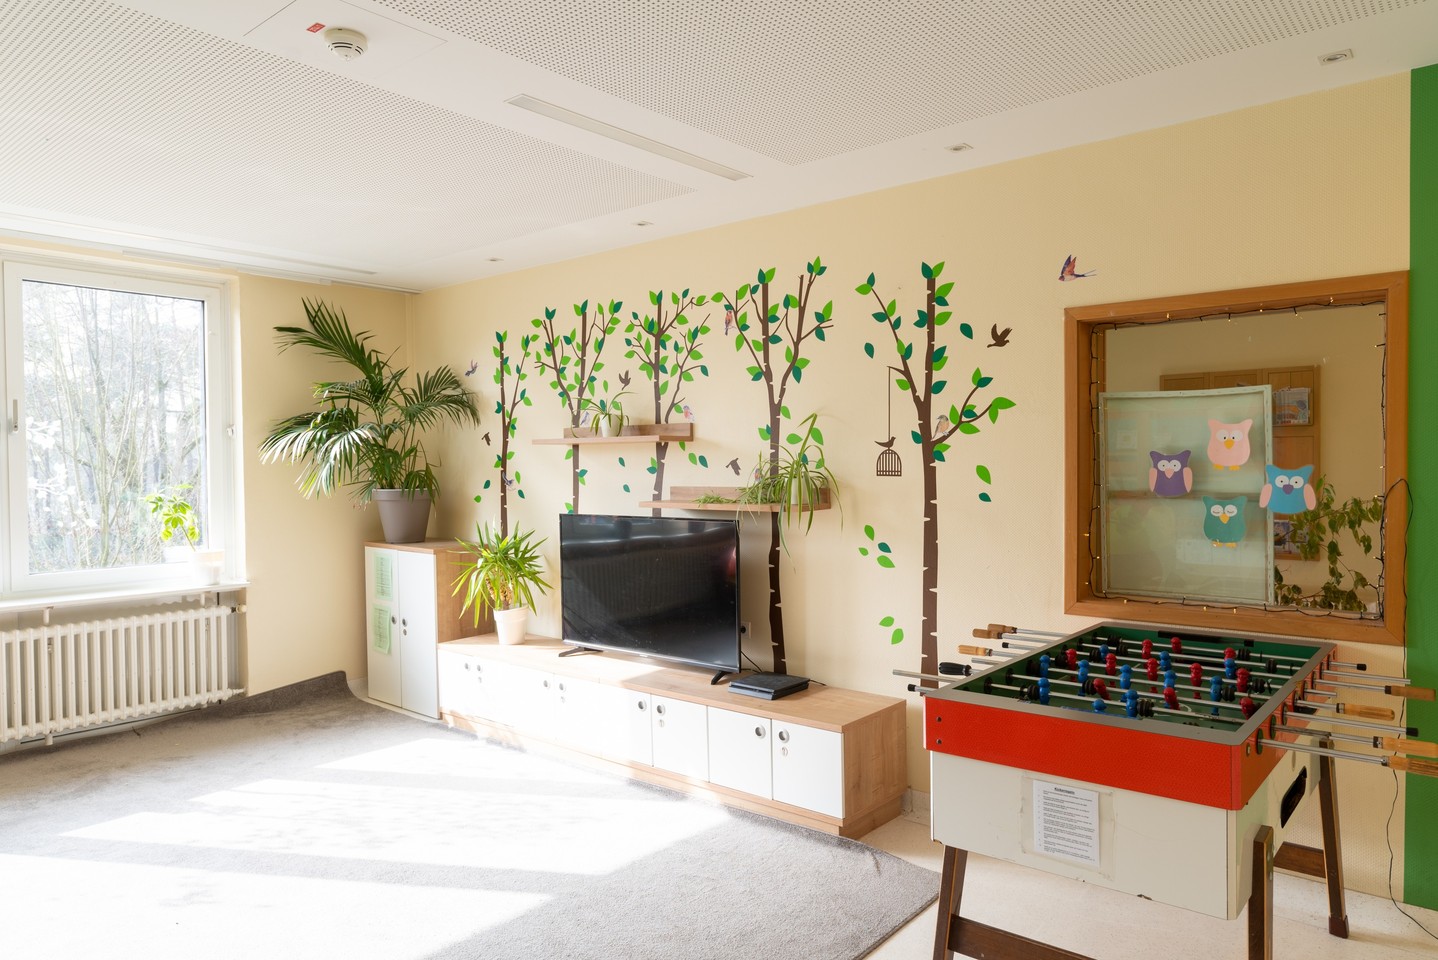 In dem Aufenthaltsraum stehen ein Kickertisch, ein Fernseher und eine Pflanze. Die Wände werden von Wandbildern geschmückt, die Bäume und Vögel zeigen